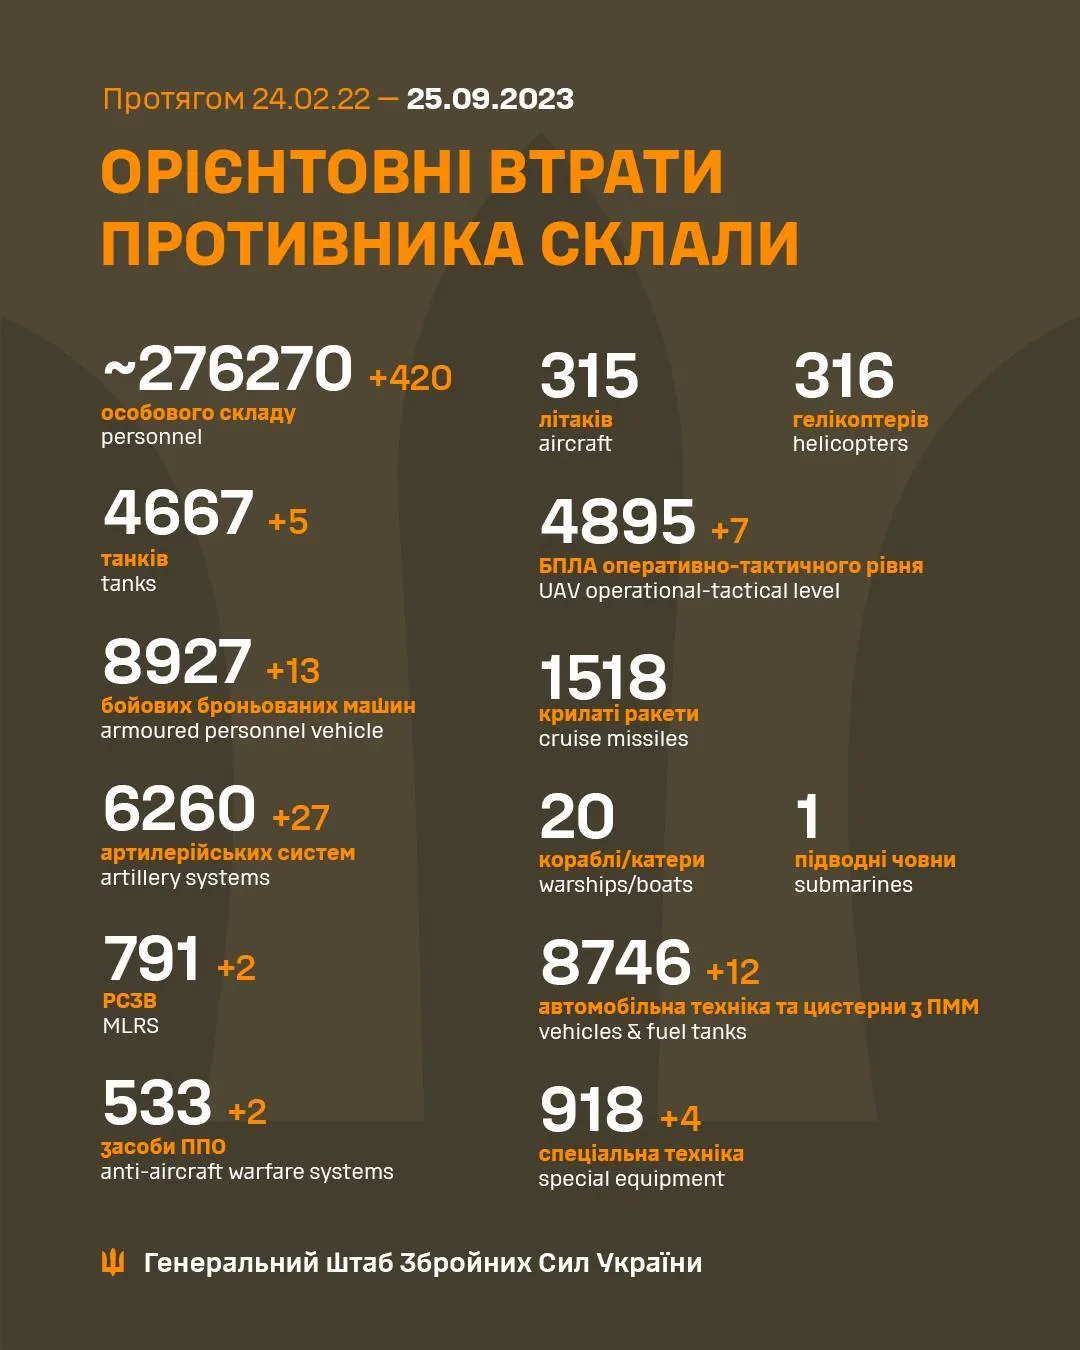 Воины ВСУ за сутки проредили армию РФ на 420 наемников и 13 бронемашин